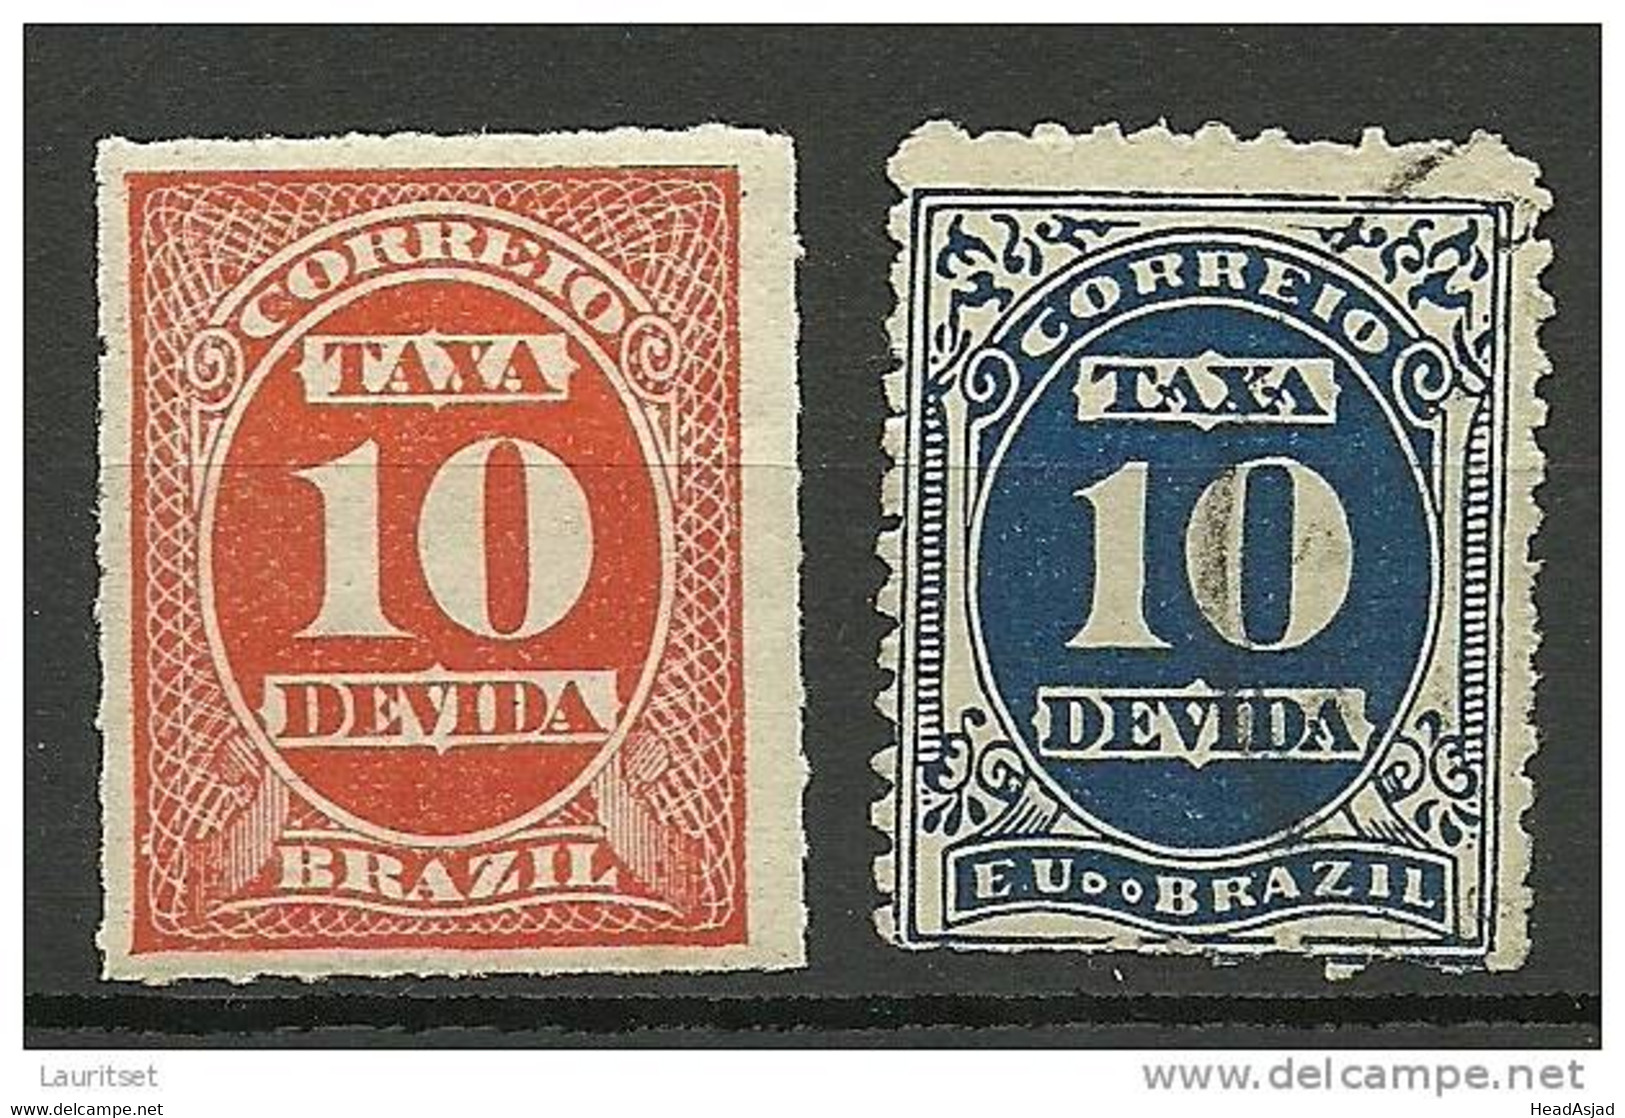 BRAZIL Brazilia 1890 - 1895 Portomarken Taxa Devida - Portomarken